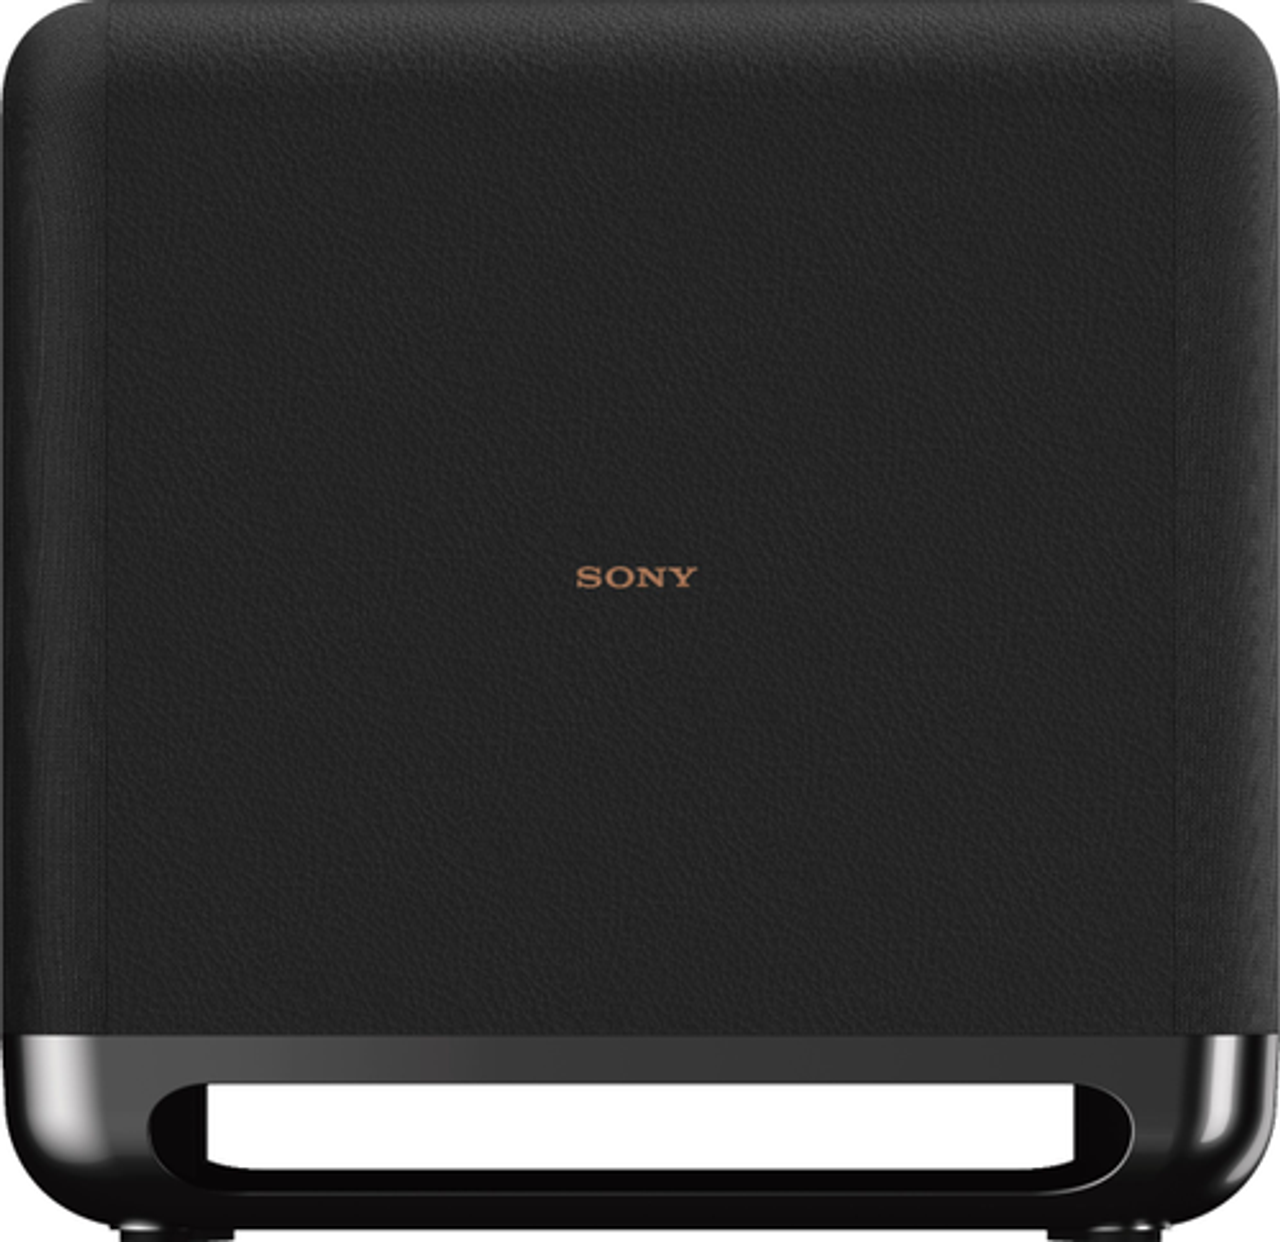 Sony - SASW5 300W Wireless Subwoofer - Black